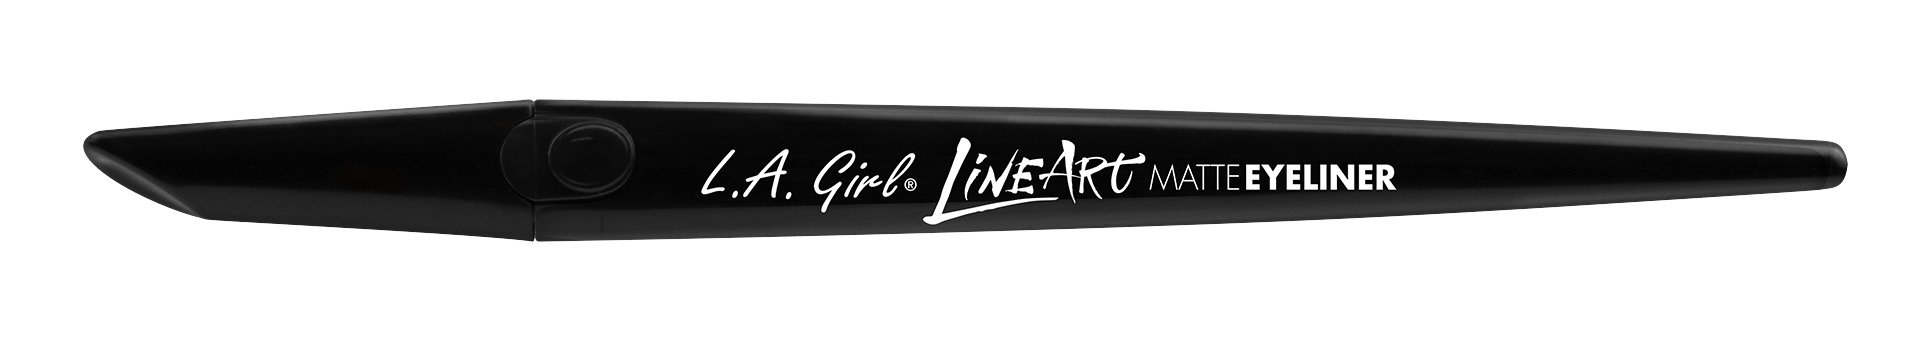 L.A. Girl Line Art Matte Eyeliner, Intense Black, 0.014 Fl. Oz. (Pack of 3),GLE712